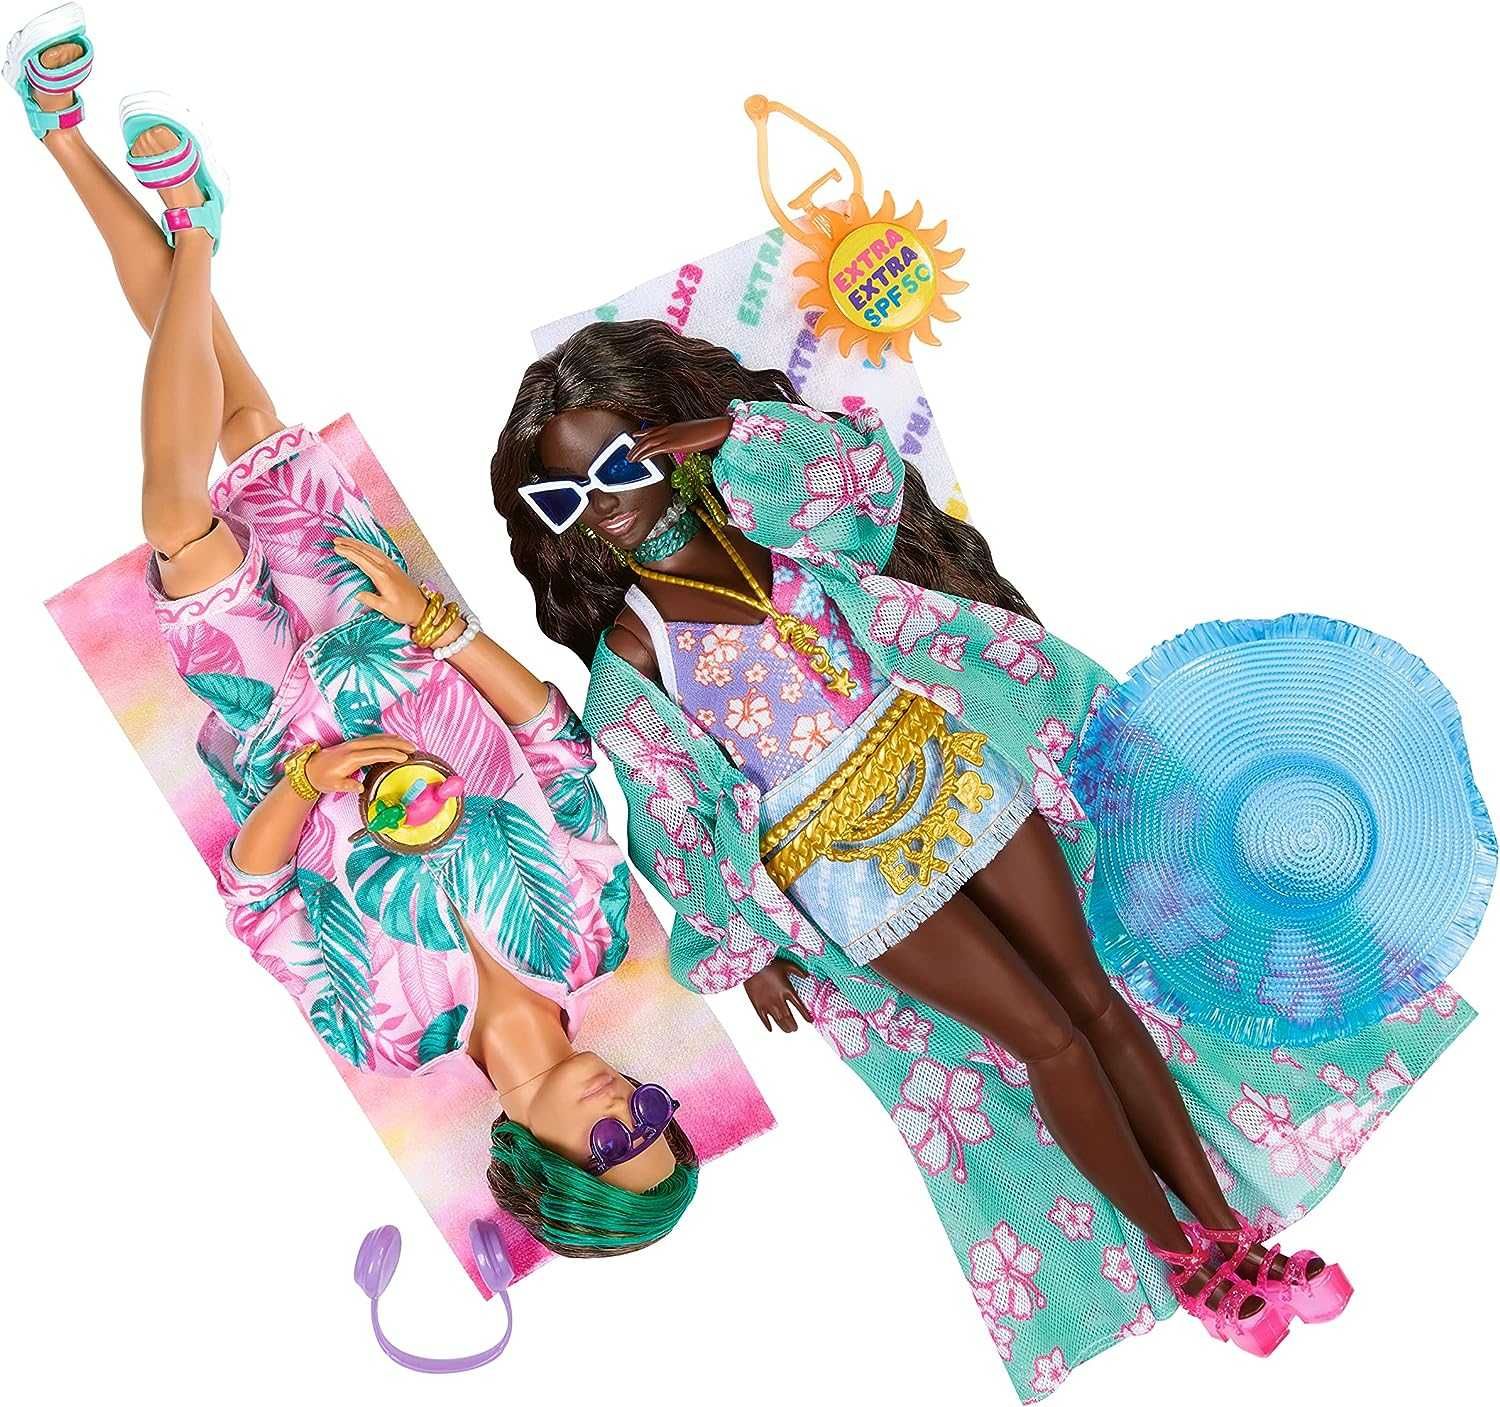 Барбі Кен Кен Екстра подорож відпочинок на пляжі Barbie Extra Fly Ken